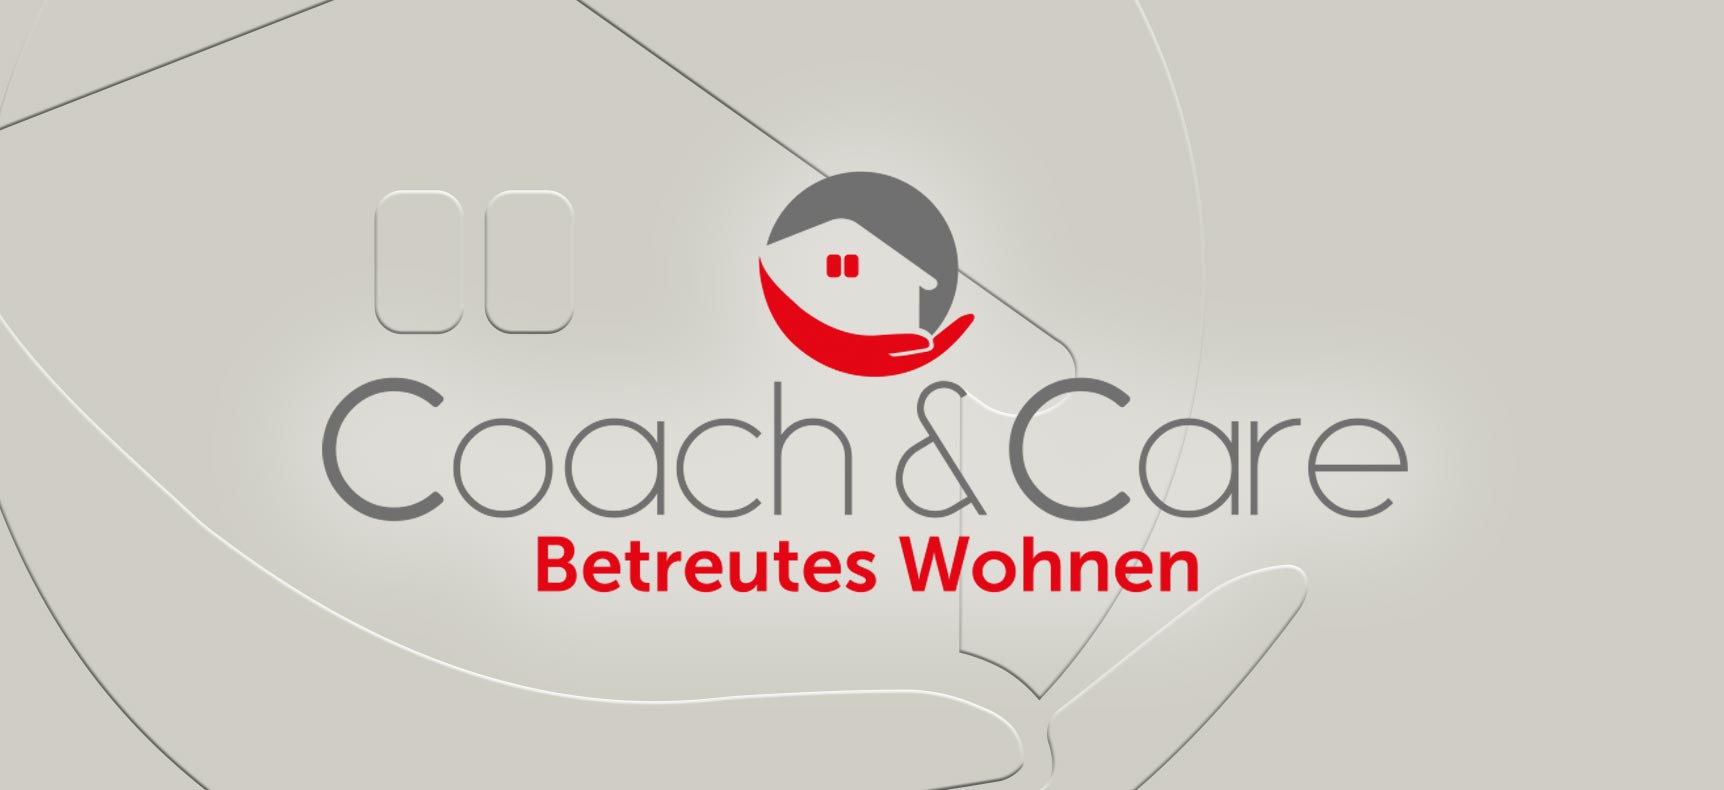 Coach&Care Betreutes Wohnen | Corporate Design gestaltet von StatusZwo.com